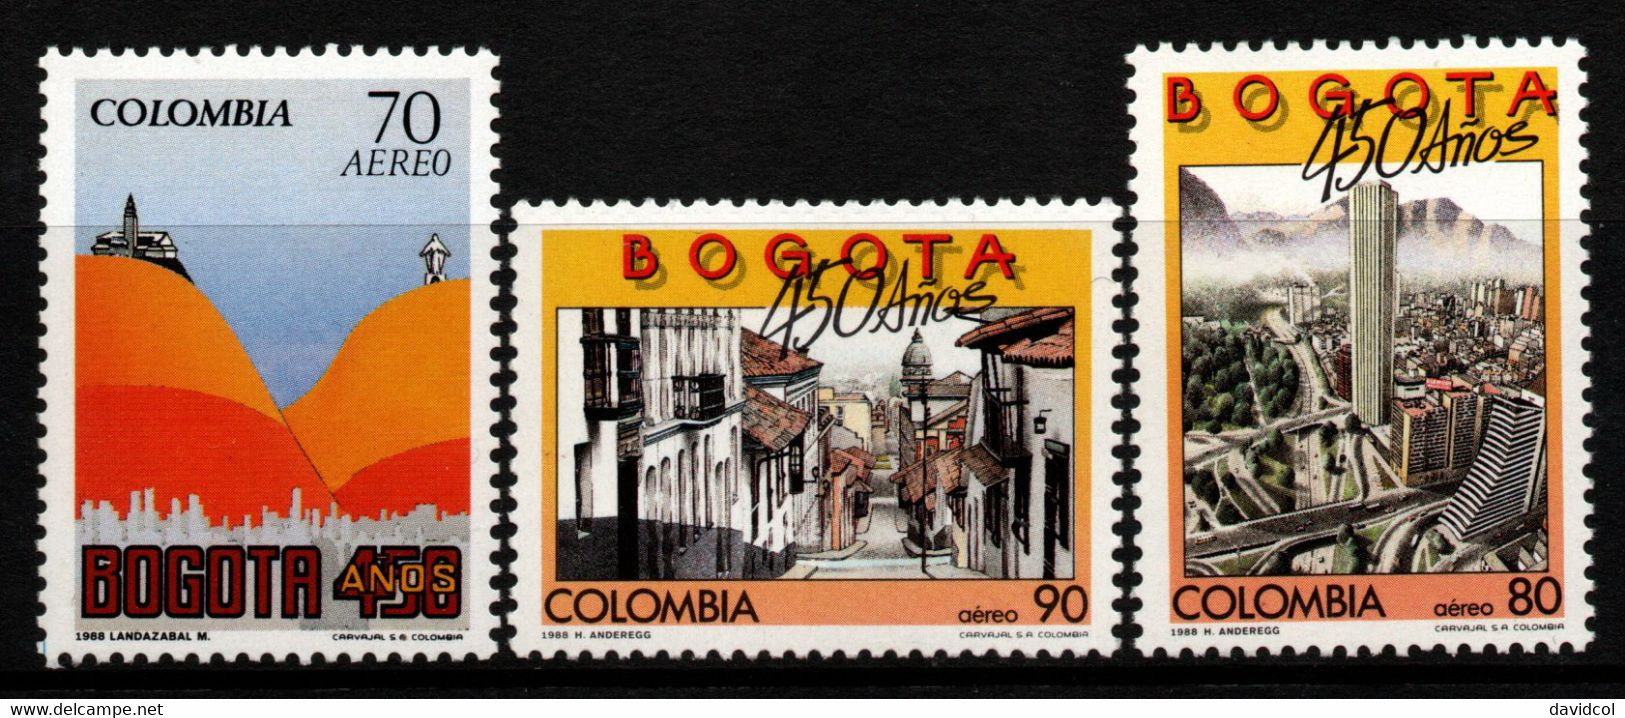 02- KOLUMBIEN - 1988 - MI#:1717,1725-26 - MNH- BOGOTA 450 YEARS- ARCHITECTURE - Kolumbien